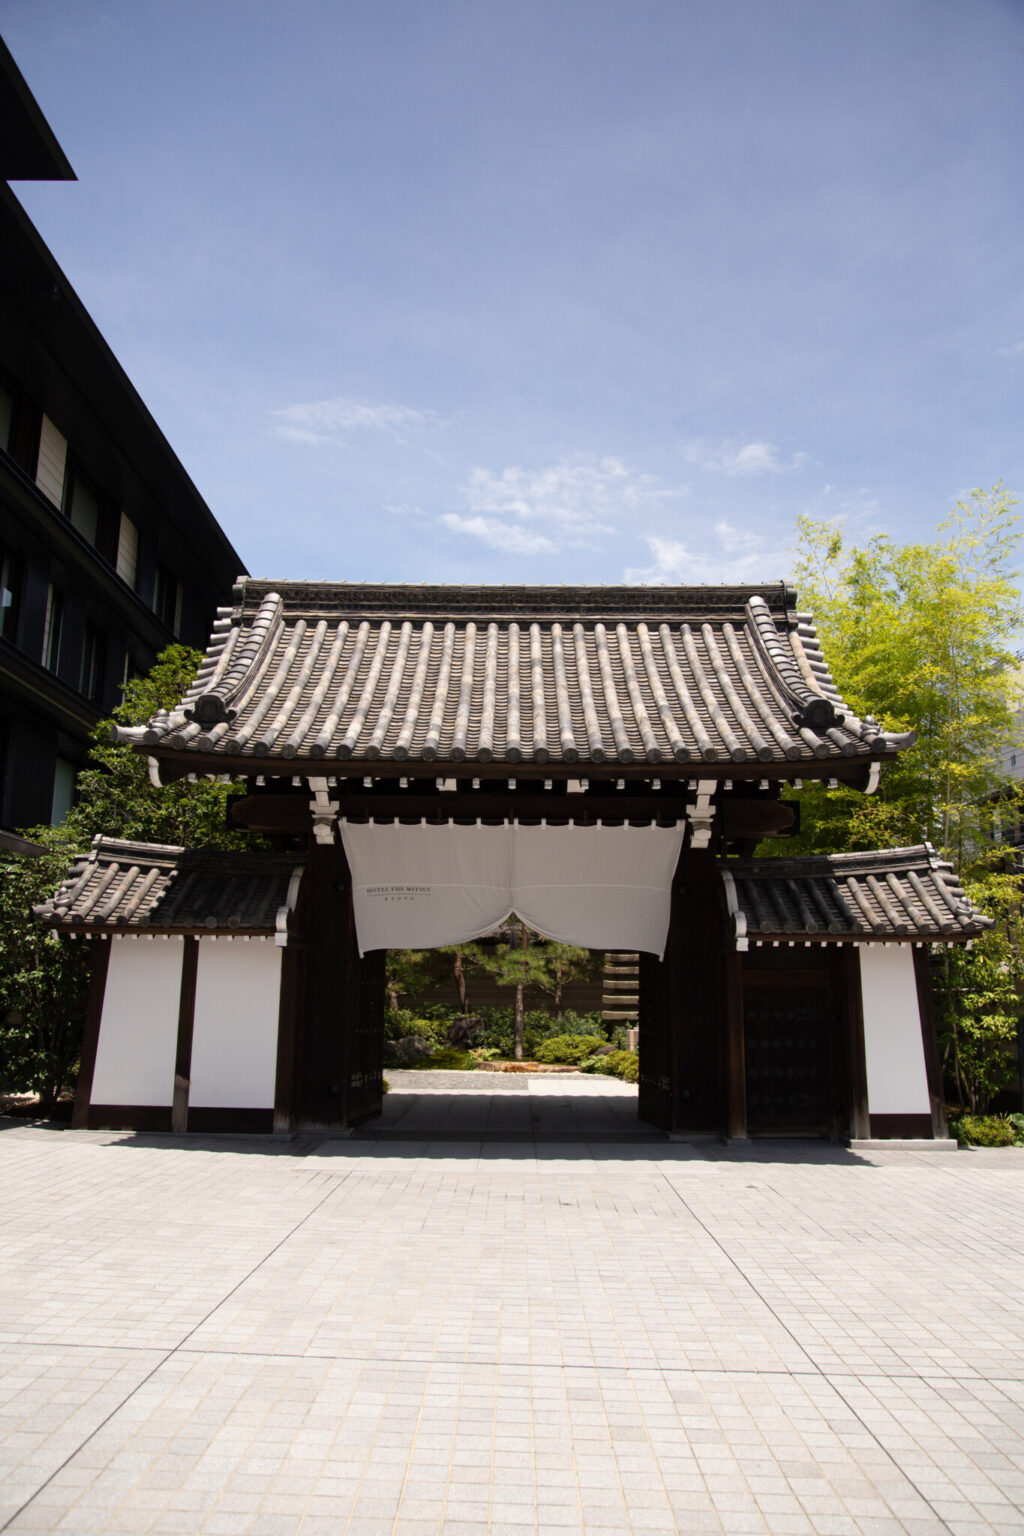 ホテルの表玄関「梶井宮門」は登録有形文化財に登録されている。